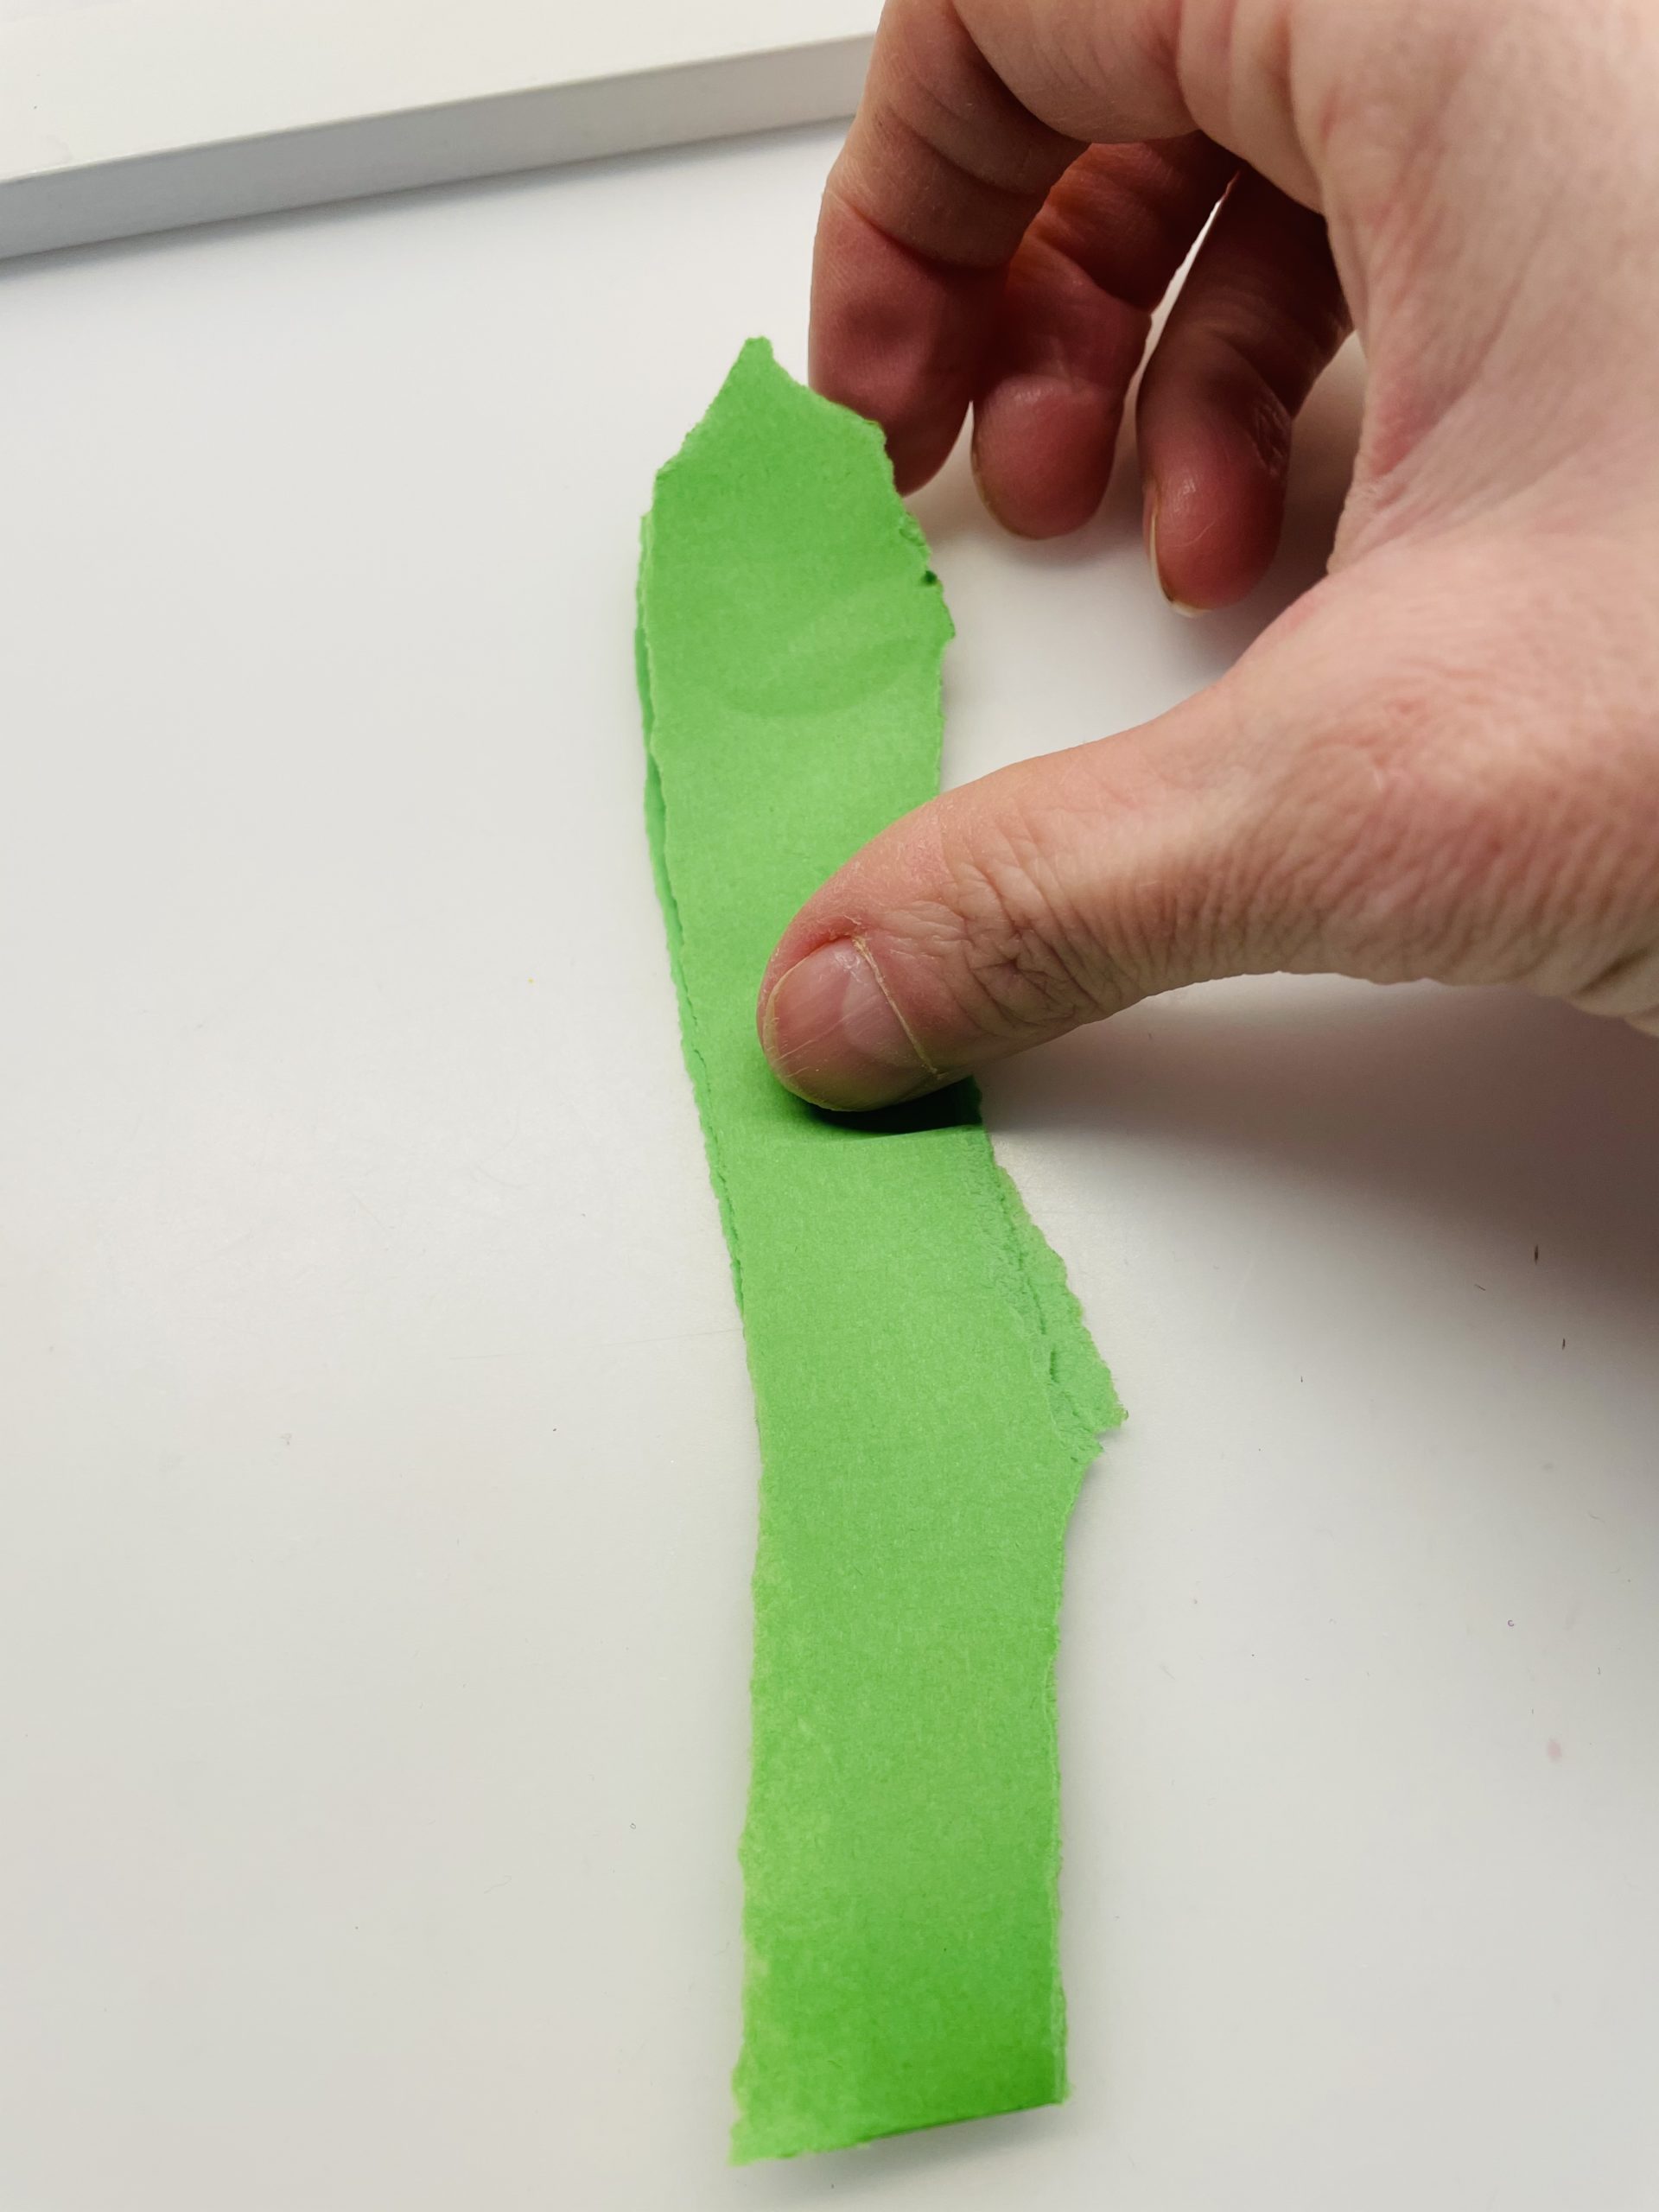 Bild zum Schritt 9 für die Kinder-Beschäftigung: 'Klappt nun das grüne Papier in der Mitte zusammen. Es...'